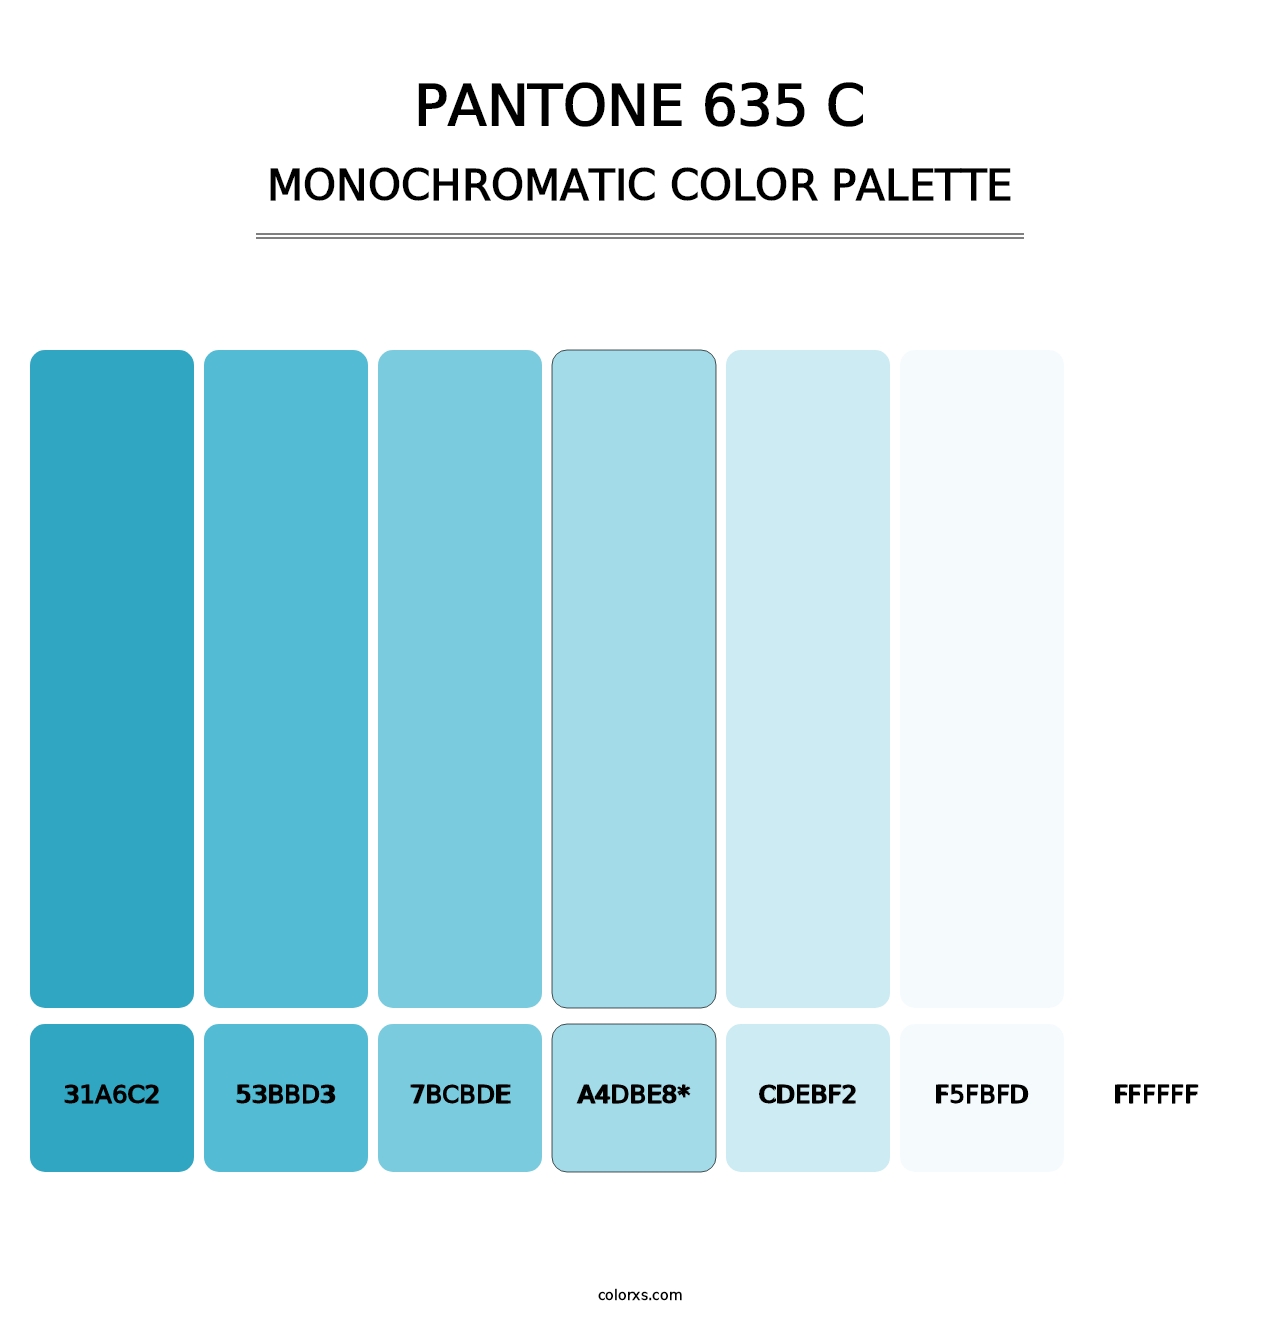 PANTONE 635 C - Monochromatic Color Palette